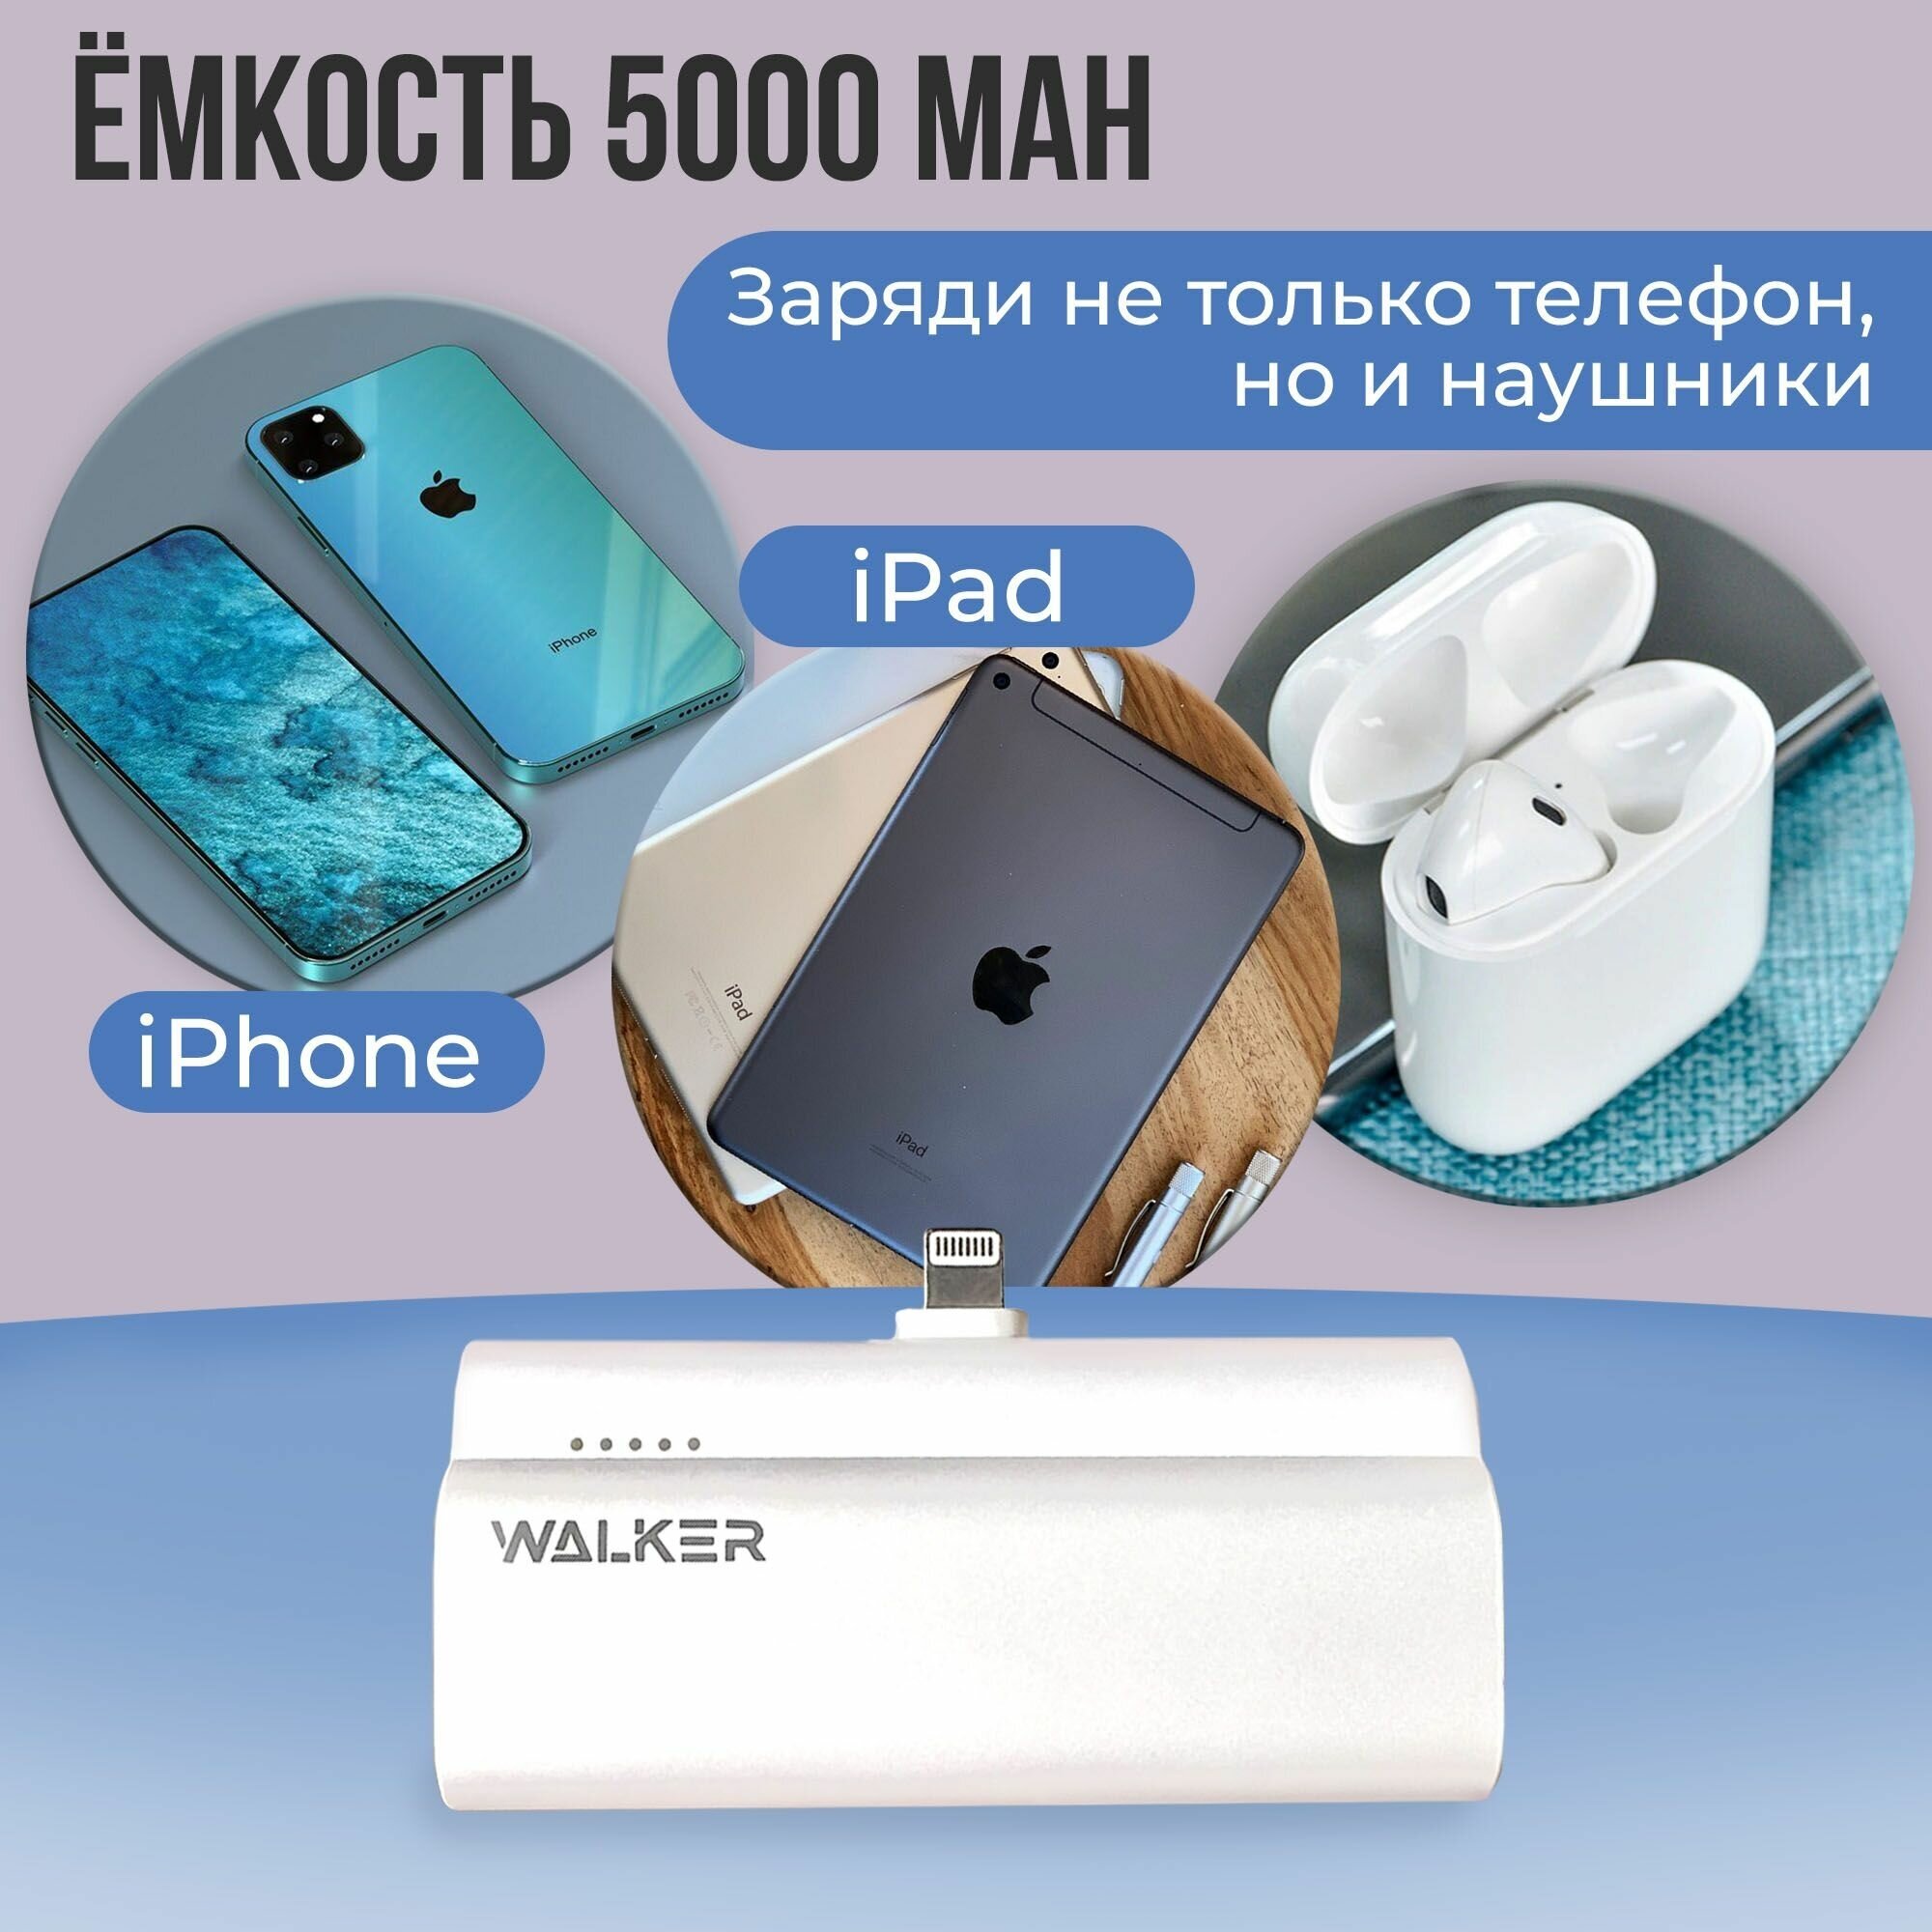 Повербанк для iphone 5000 mAh разъем Lightning WALKER WB-960 power bank для телефона внешний аккумулятор пауэр банк на айфон пауэрбанк белый